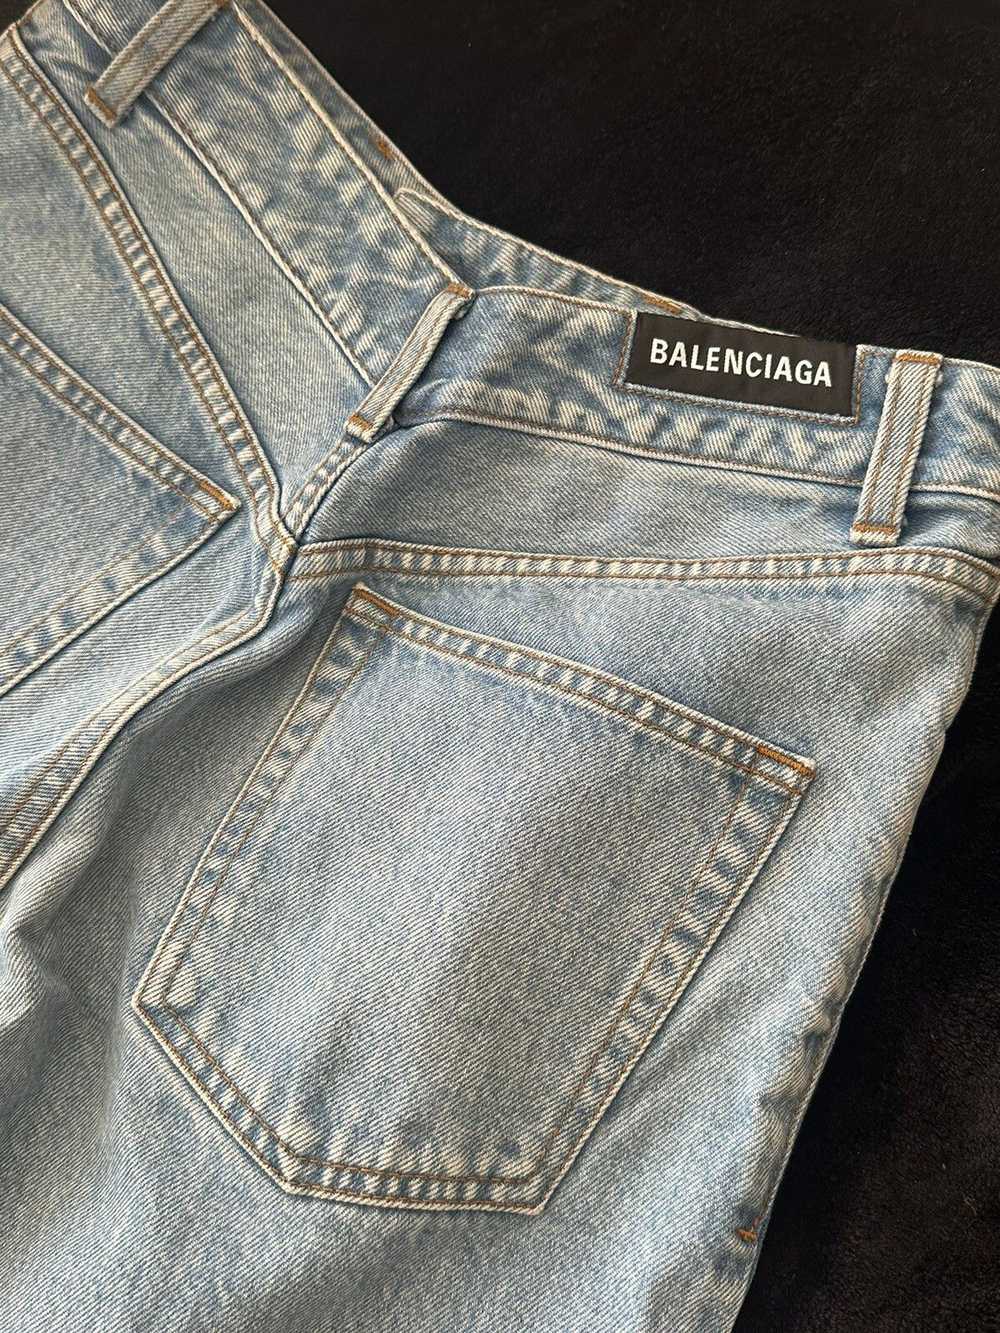 Balenciaga Balenciaga 2019 Straight Leg Jeans - image 5